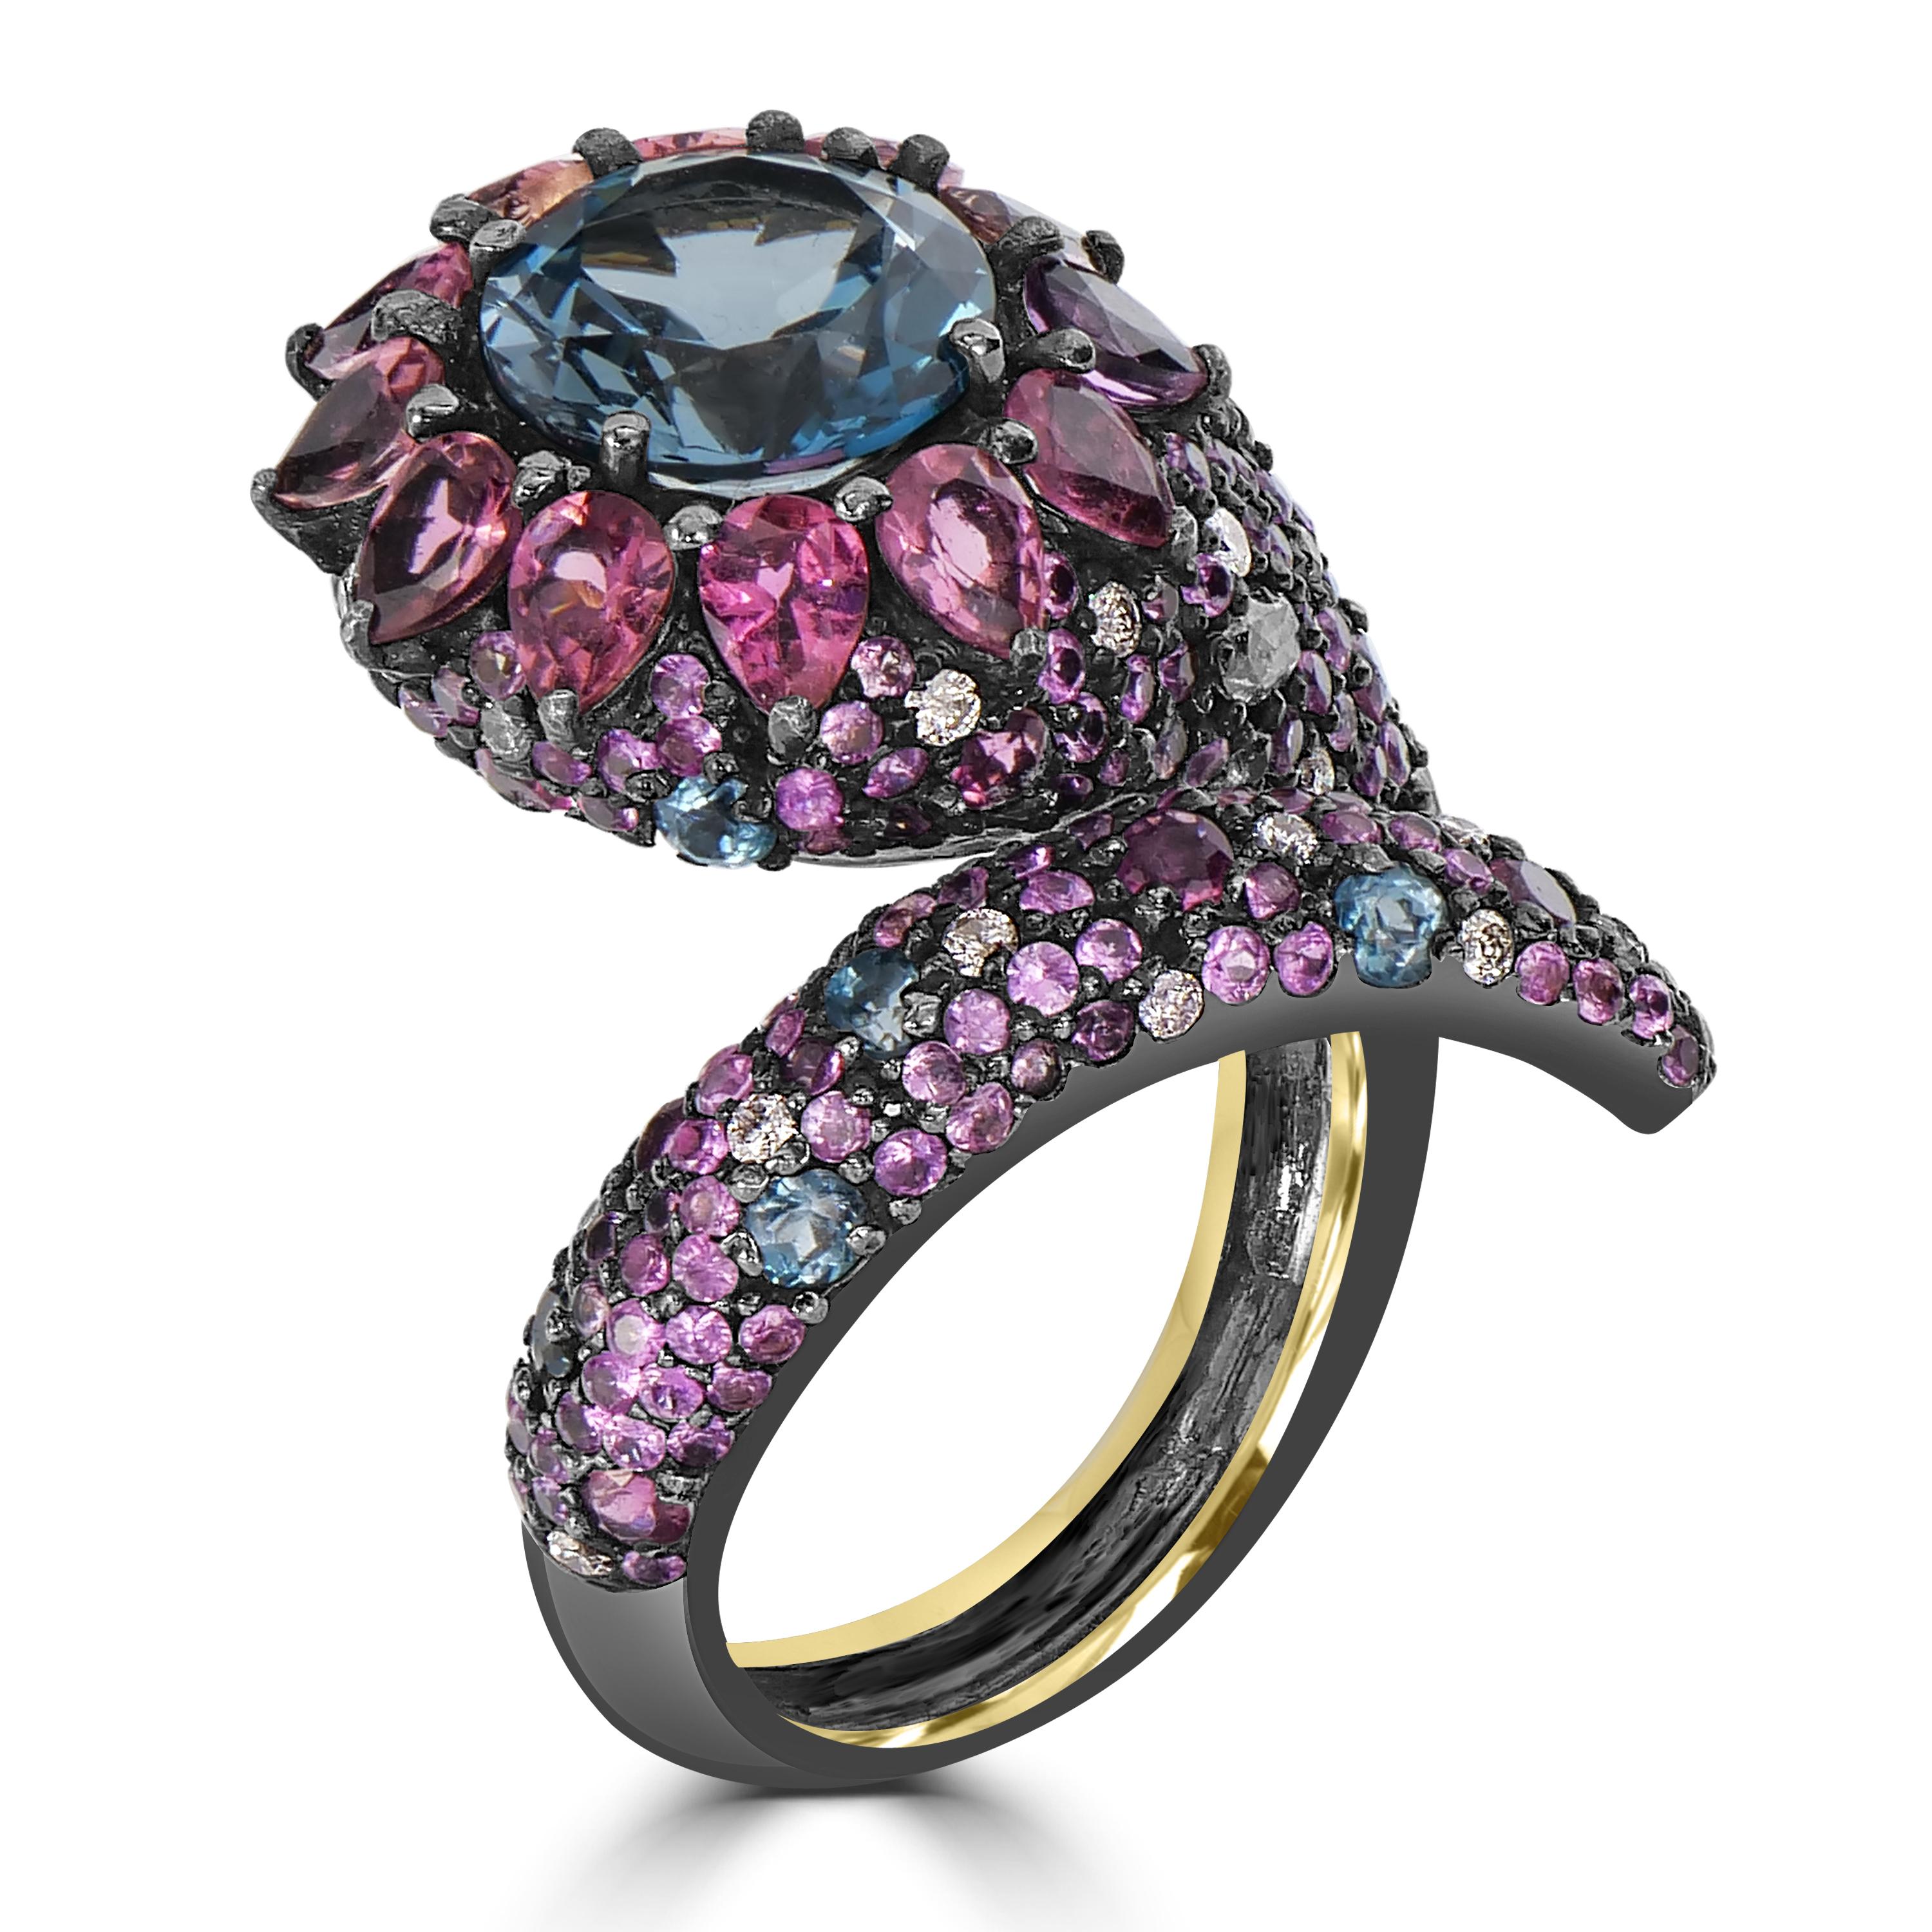 Der viktorianische Serpentinring mit mehreren Edelsteinen und Diamanten ist ein wahres Zeugnis für Kunstfertigkeit und Raffinesse. Dieser Ring aus 18-karätigem Gold und schwarzem rhodiniertem Silber ist nicht einfach nur ein Schmuckstück, sondern